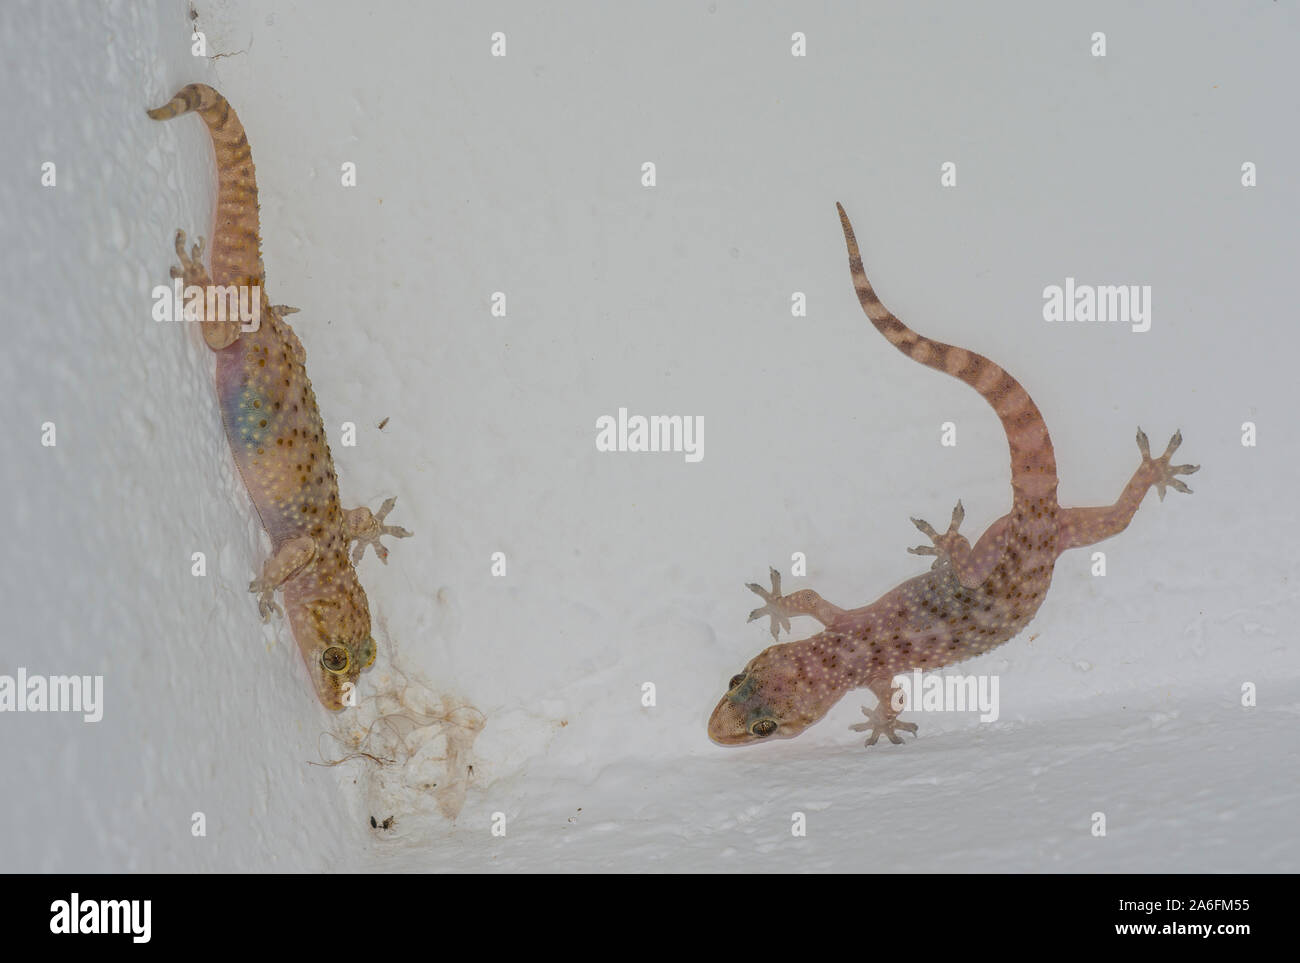 2 Türkische Geckos (Hemidactylus turcicus) an einer Wand auf der griechischen Insel Ios. Stockfoto